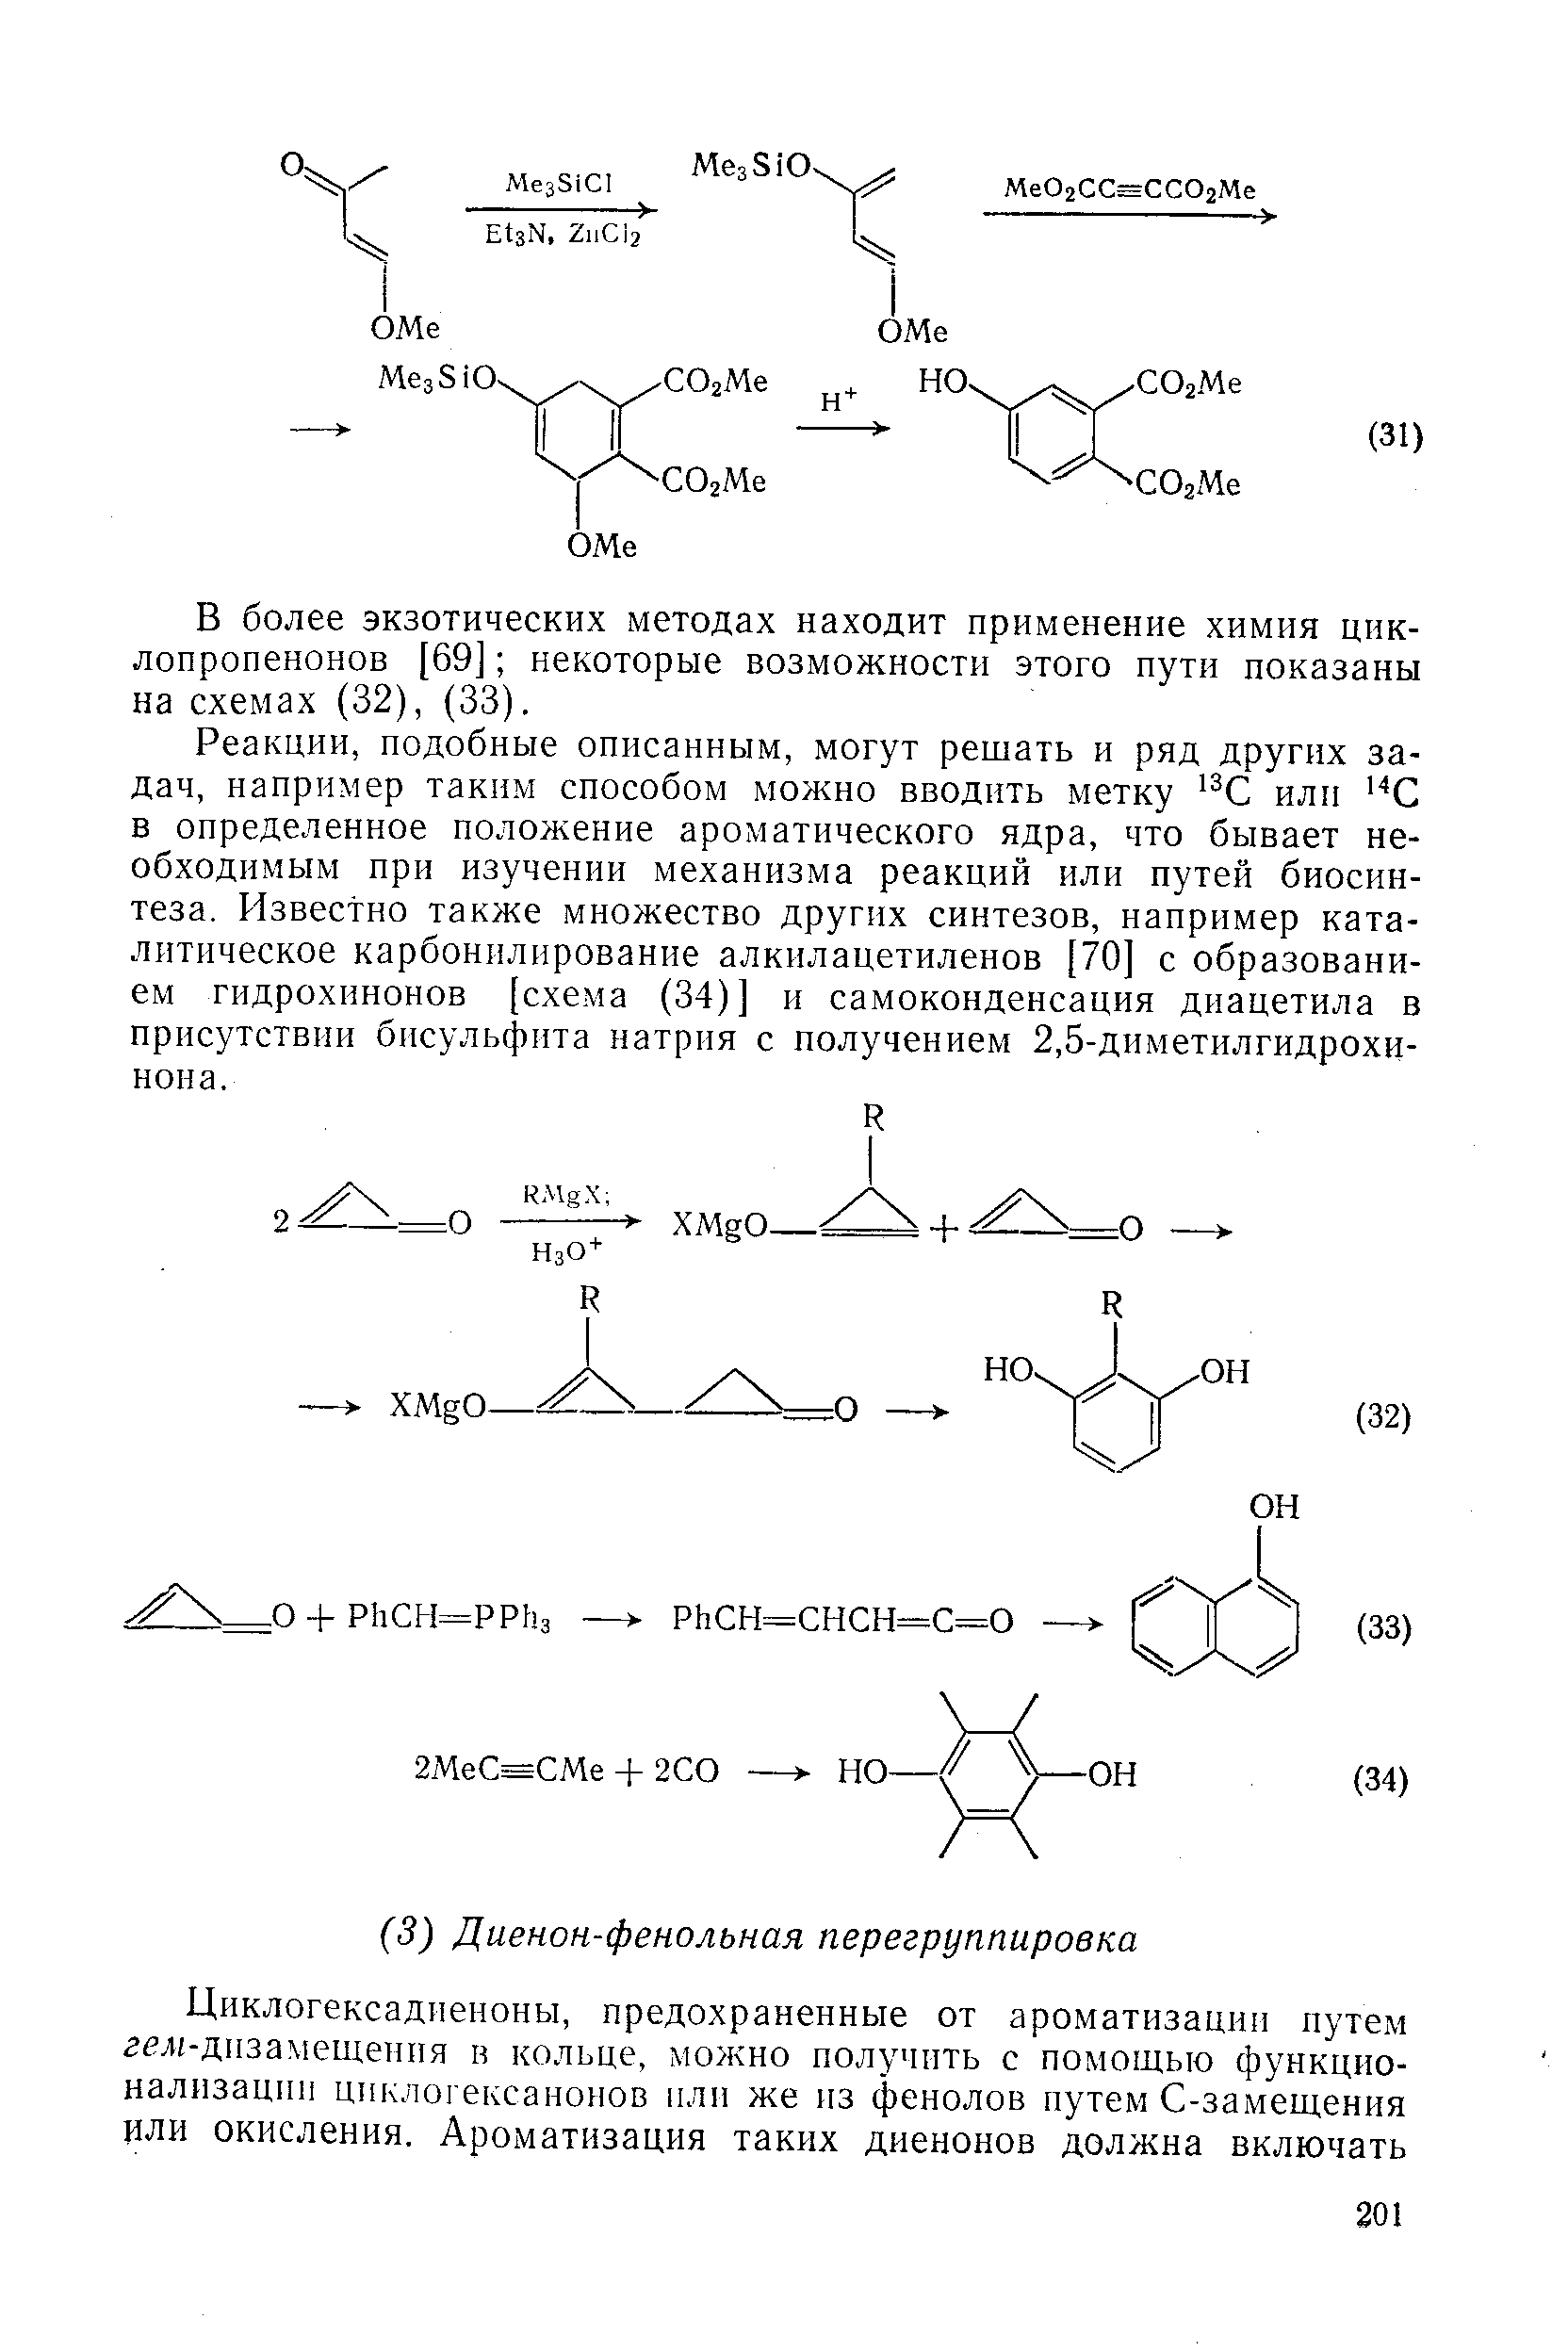 В более экзотических методах находит применение химия цик-лопропенонов [69] некоторые возможности этого пути показаны на схемах (32), (33).